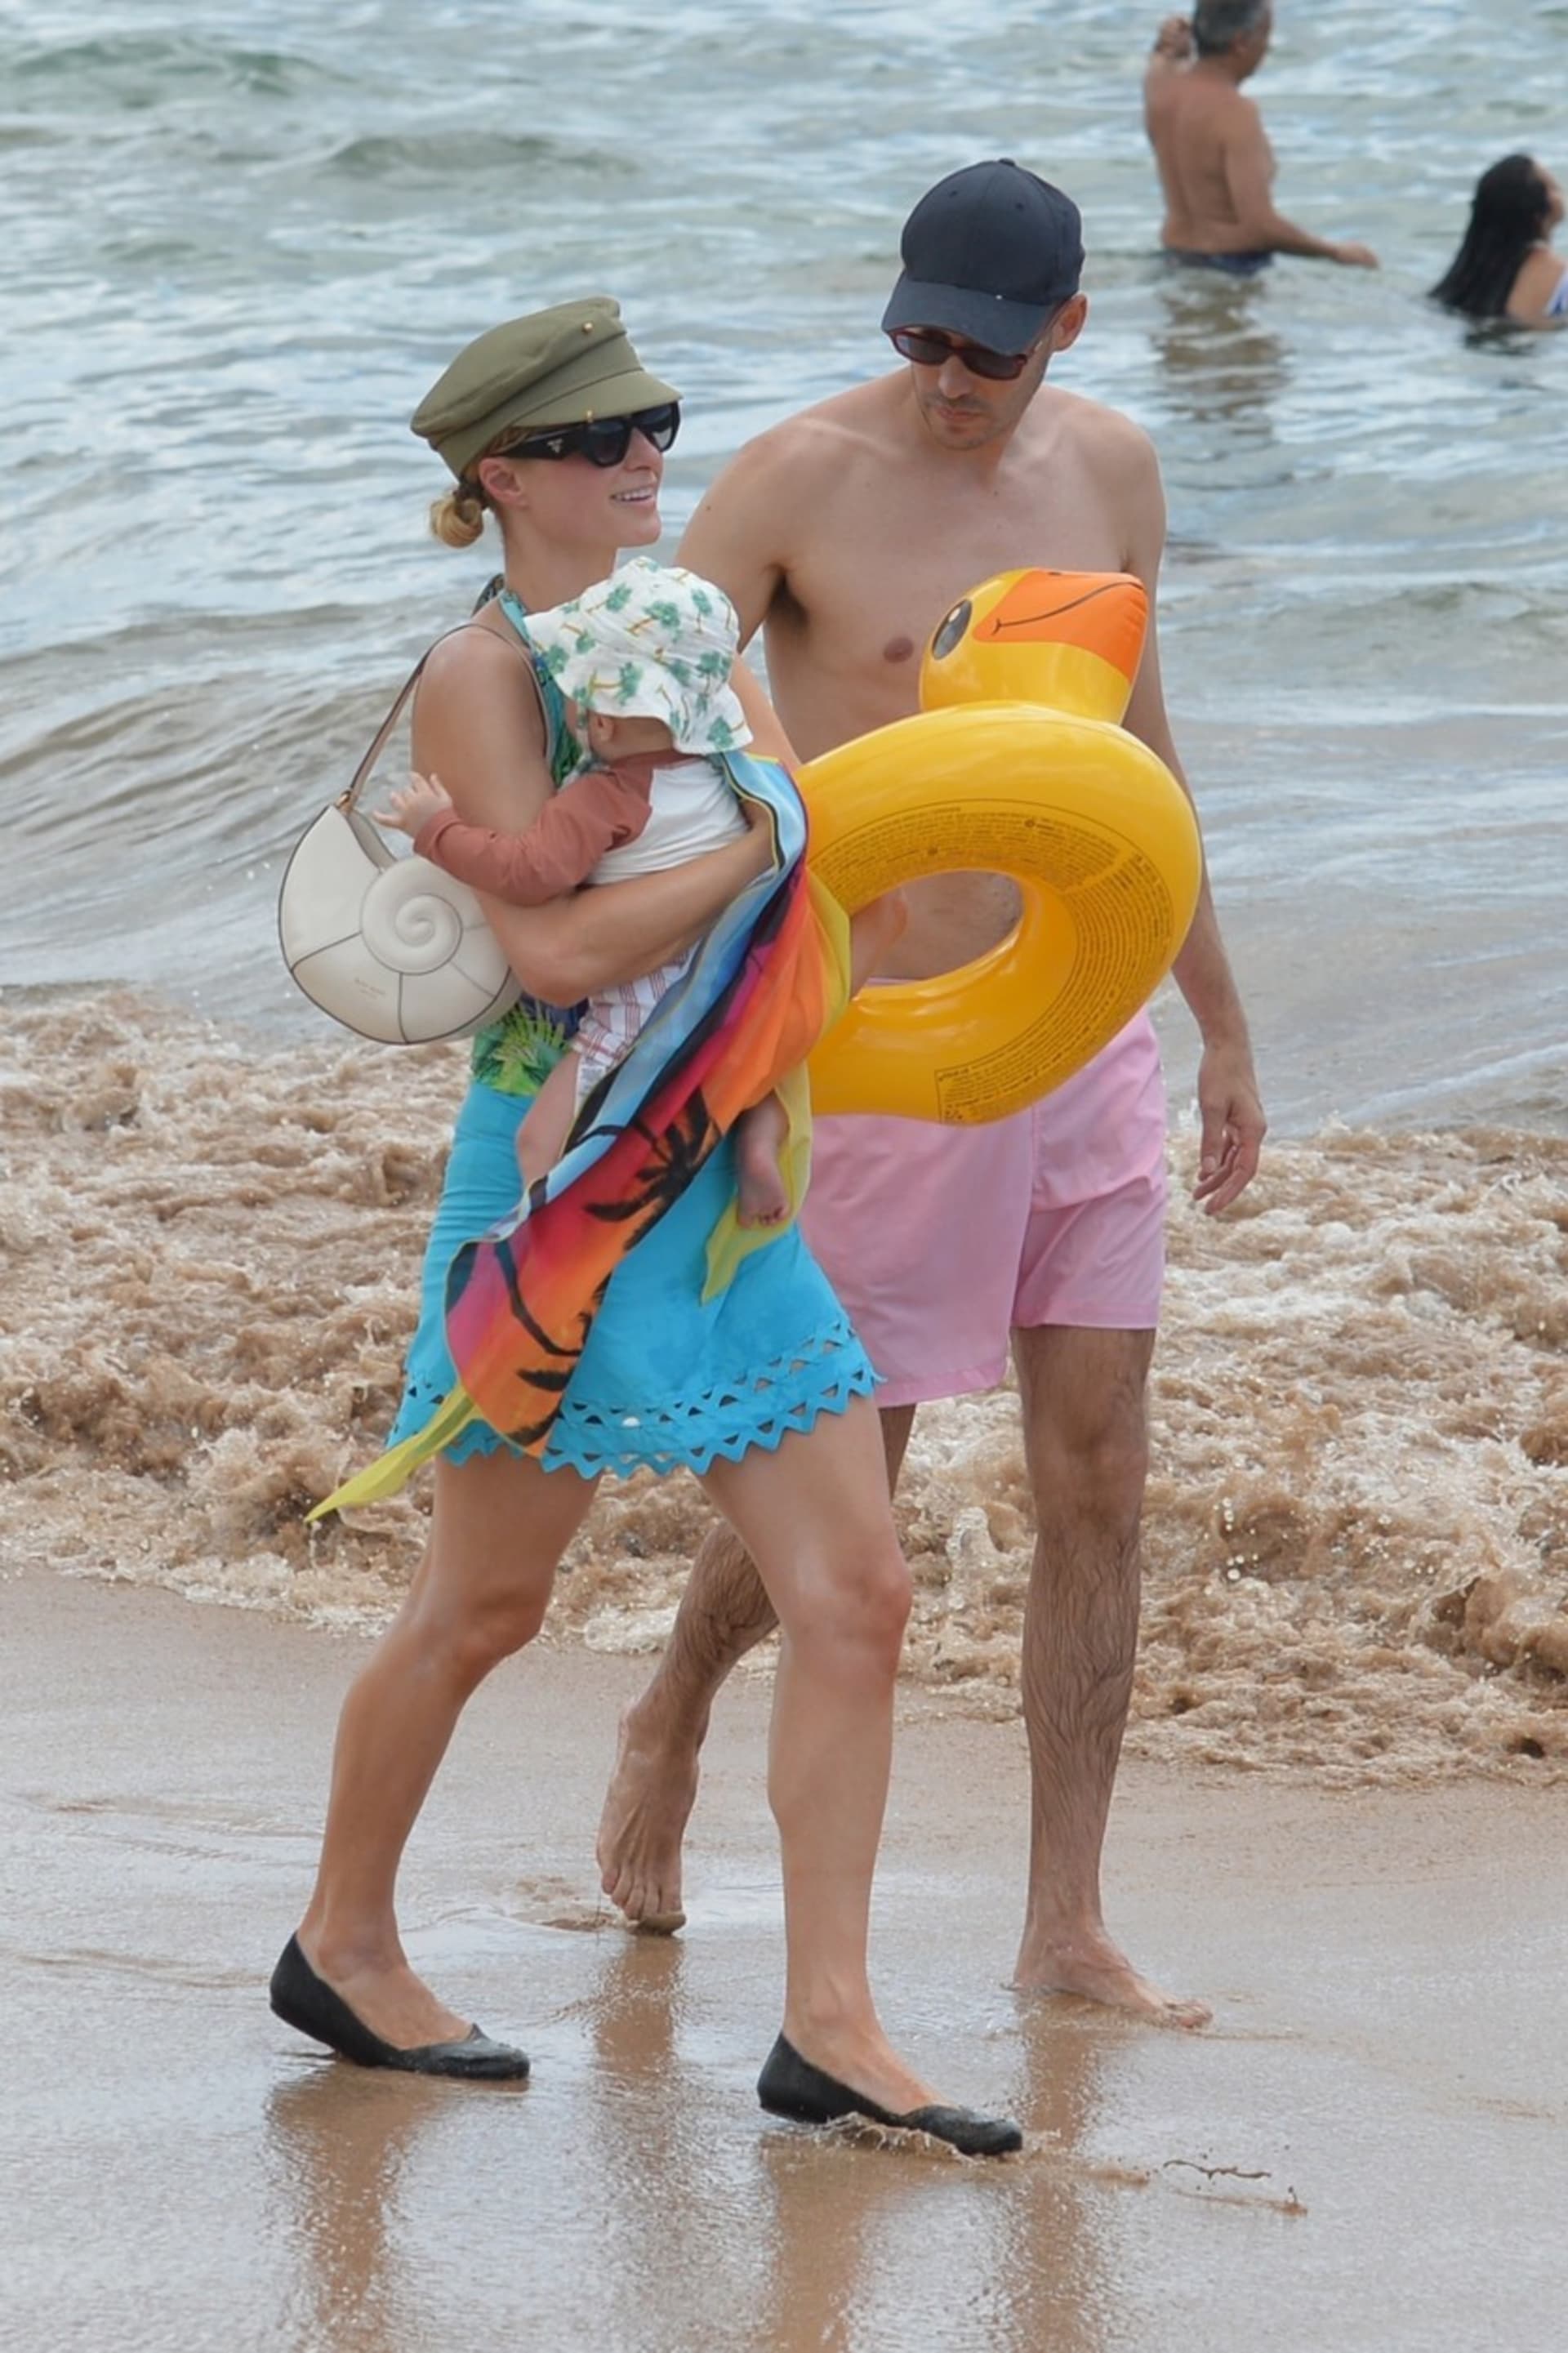 Paris Hiltonová nechápe, jak se lidé mohou takhle strefovat do jejího syna.